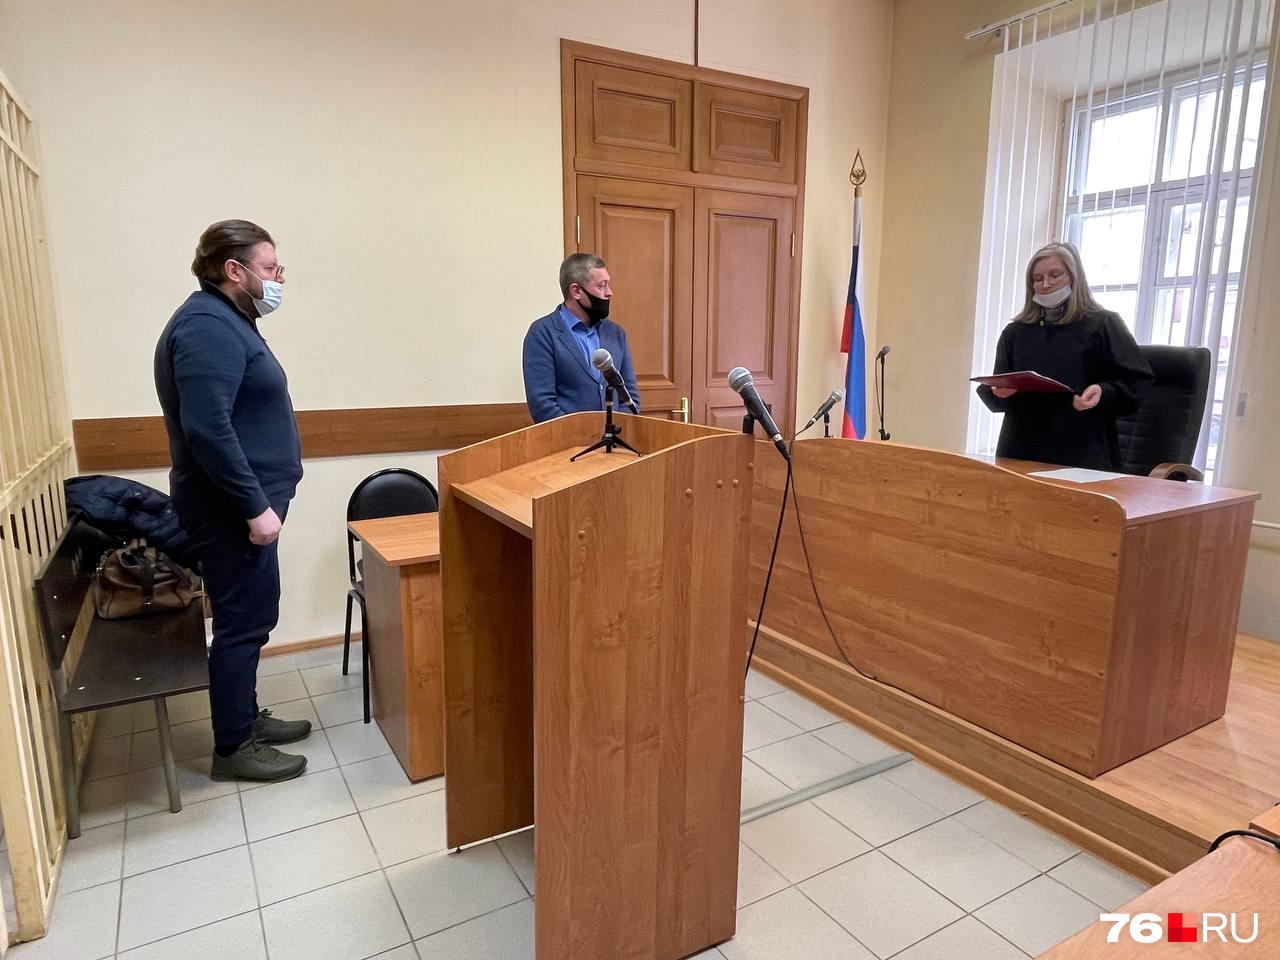 Дело рассматривалось в Кировском районном суде